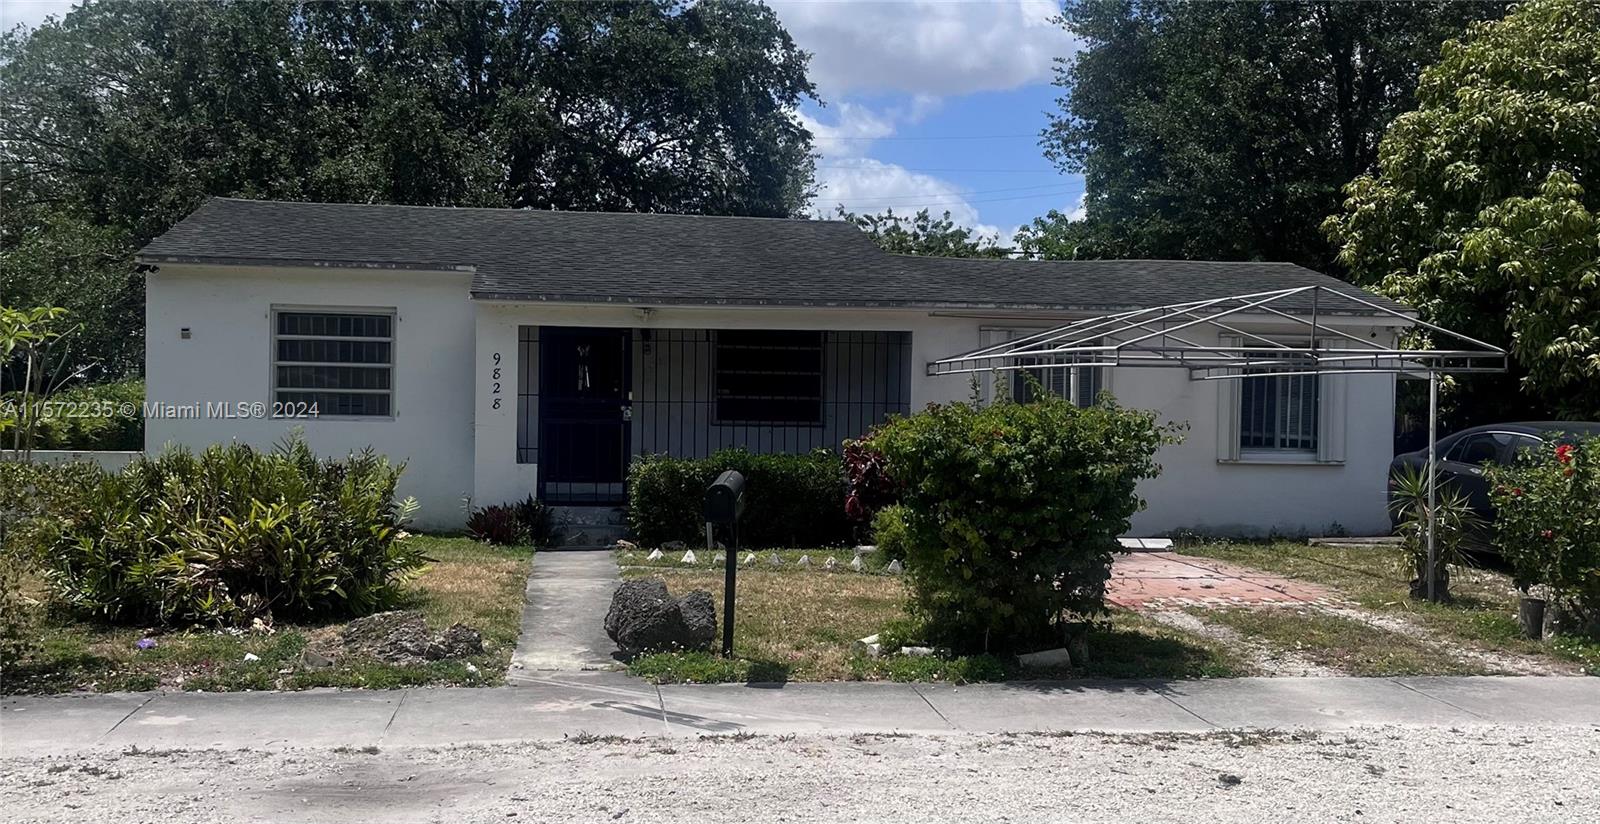 Rental Property at 9828 Nw 26 Ave Ave, Miami, Broward County, Florida -  - $575,000 MO.